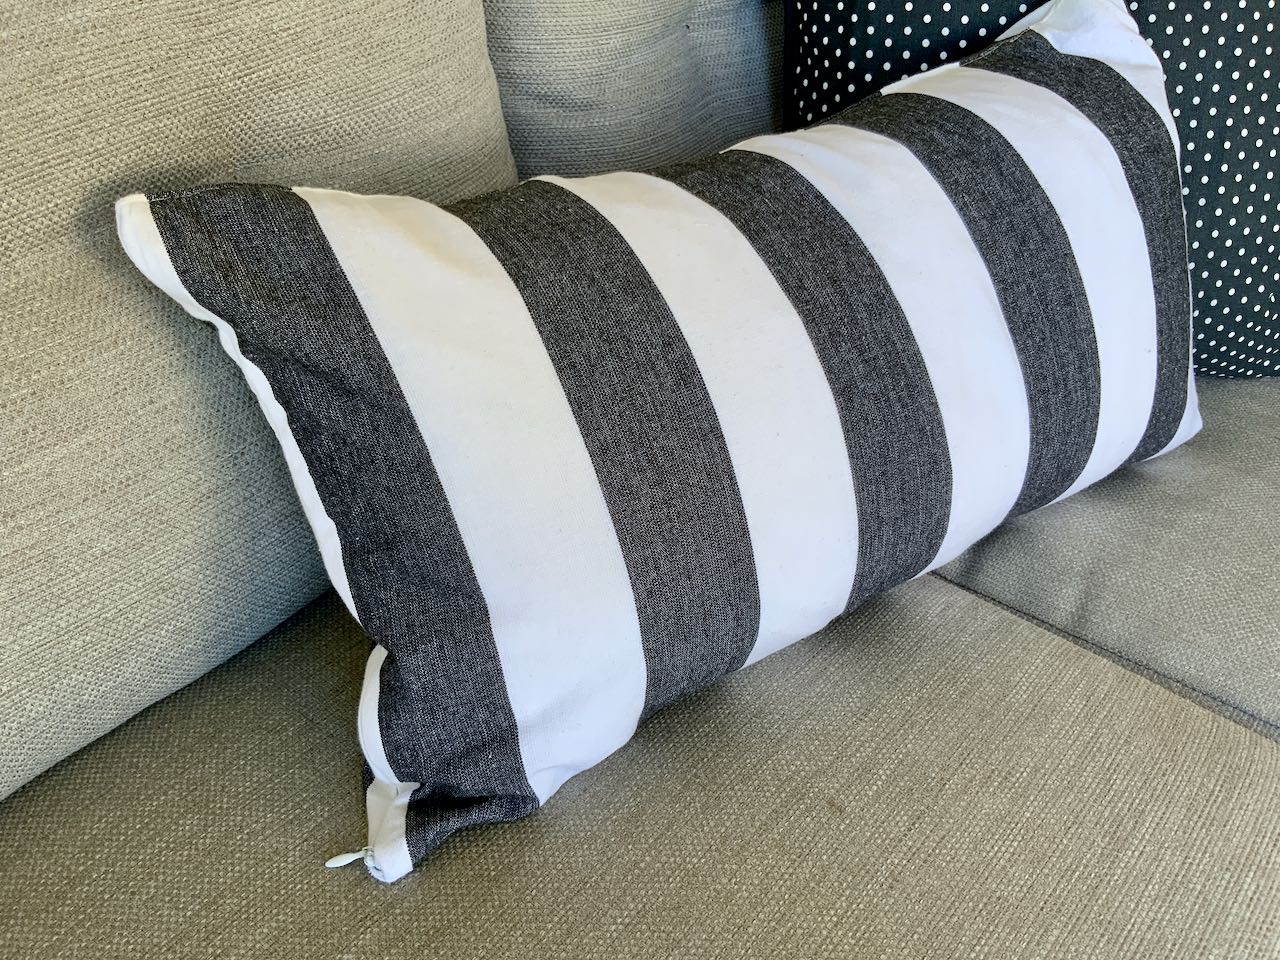 Cabana stripe lumbar pillow with invisible zipper closing